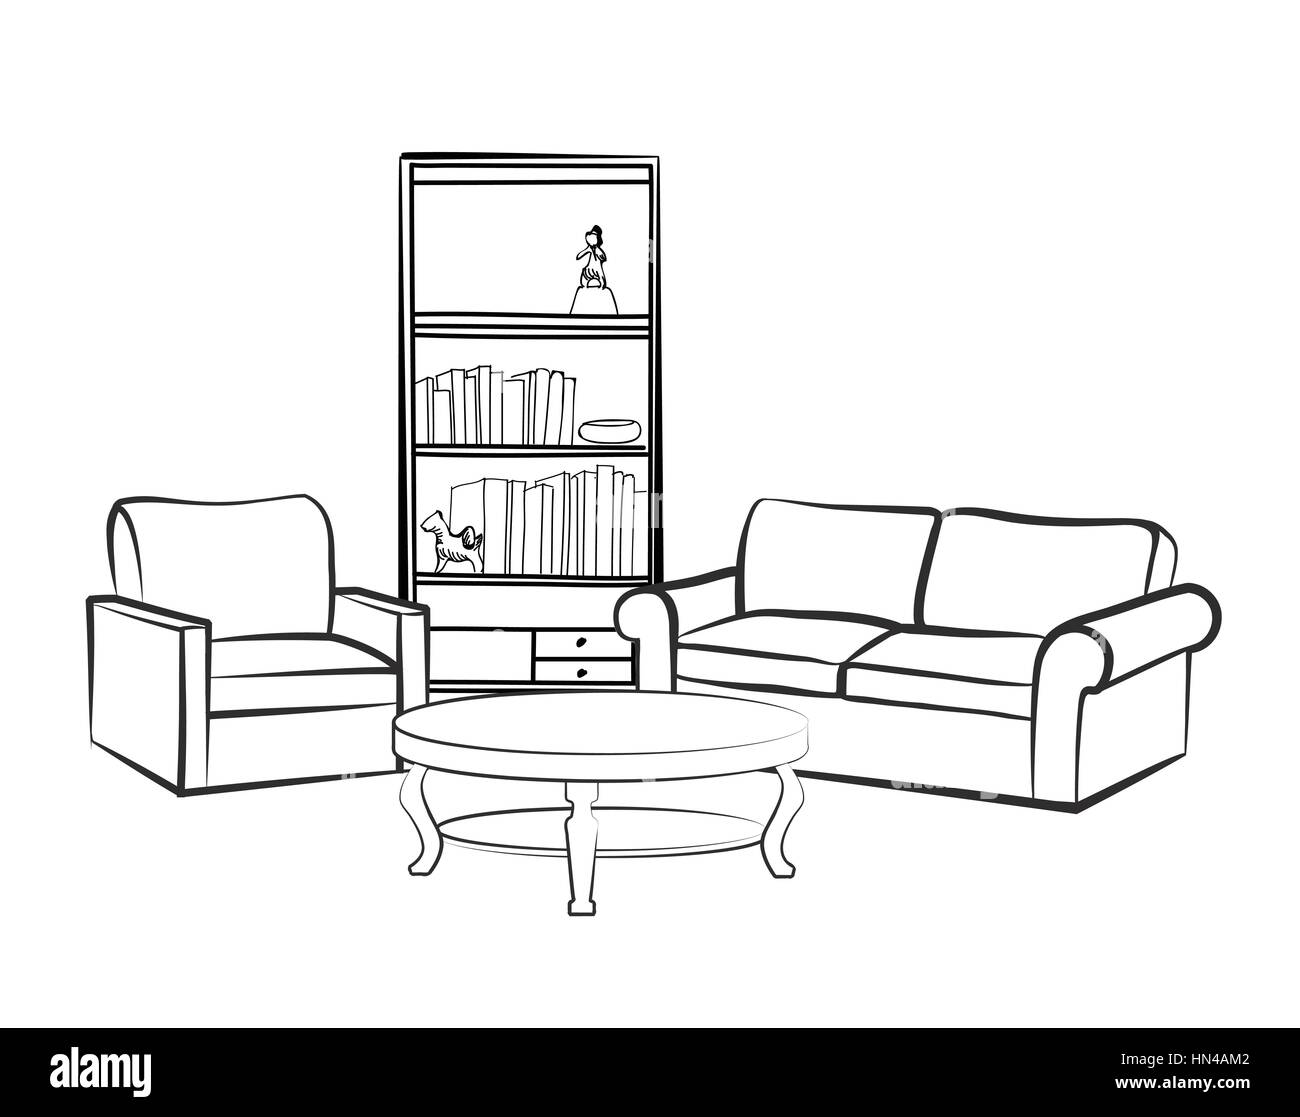 Home Inneneinrichtung mit Sofa, Sessel, Tisch, Regal und booksl. Wohnzimmer Zeichnung Design. graviert Handzeichnung Vector Illustration Stock Vektor